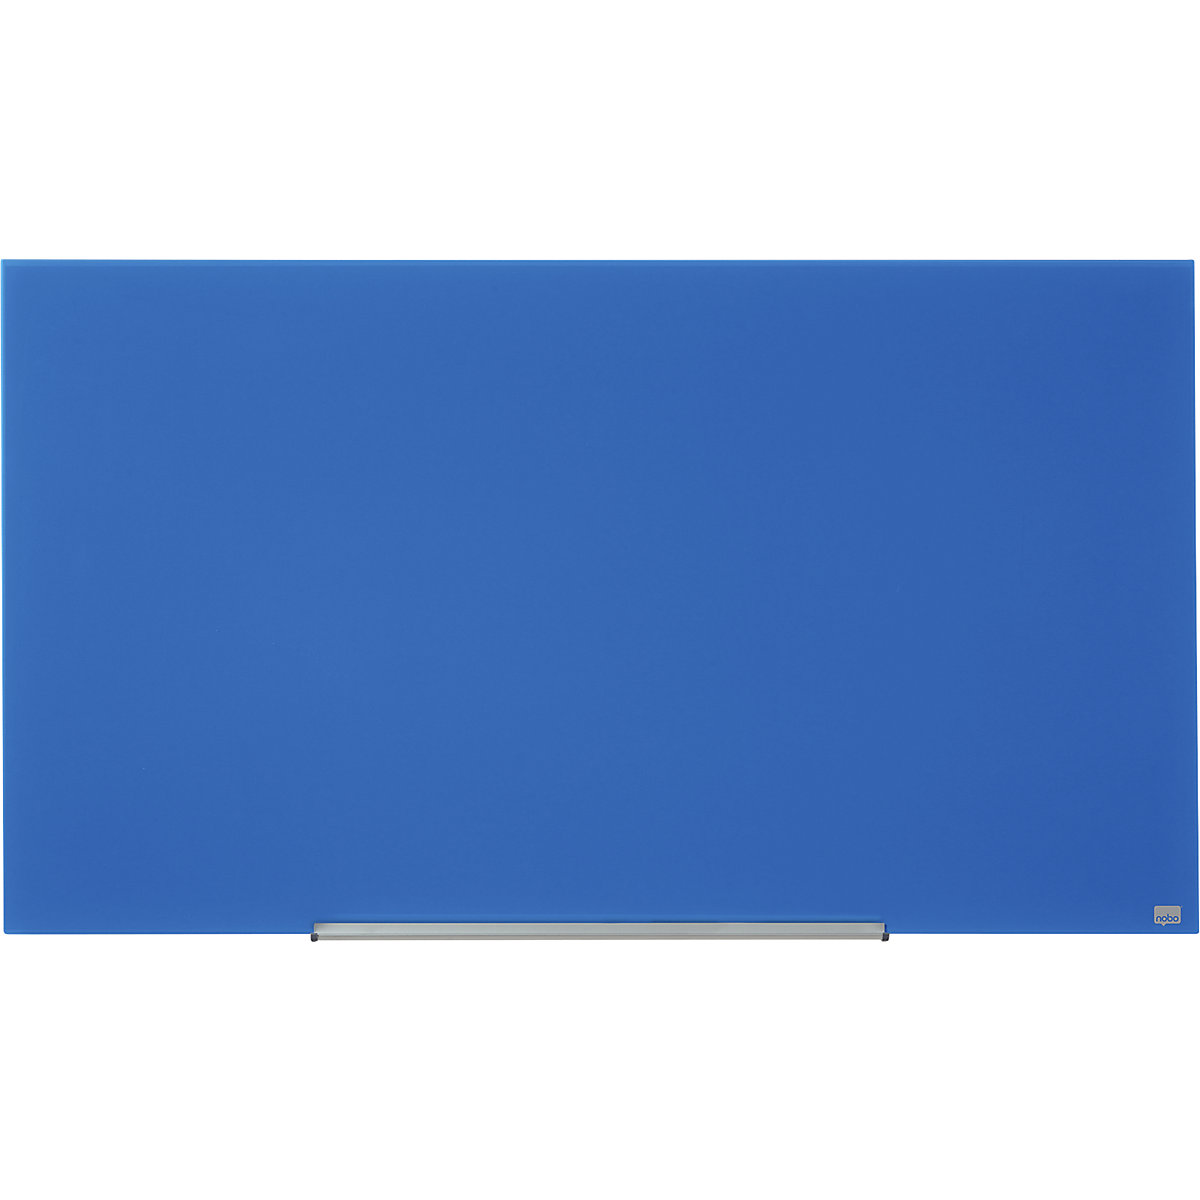 Panel rotulable de cristal WIDESCREEN – nobo, 57'' – A x H 1264 x 711 mm, azul-7